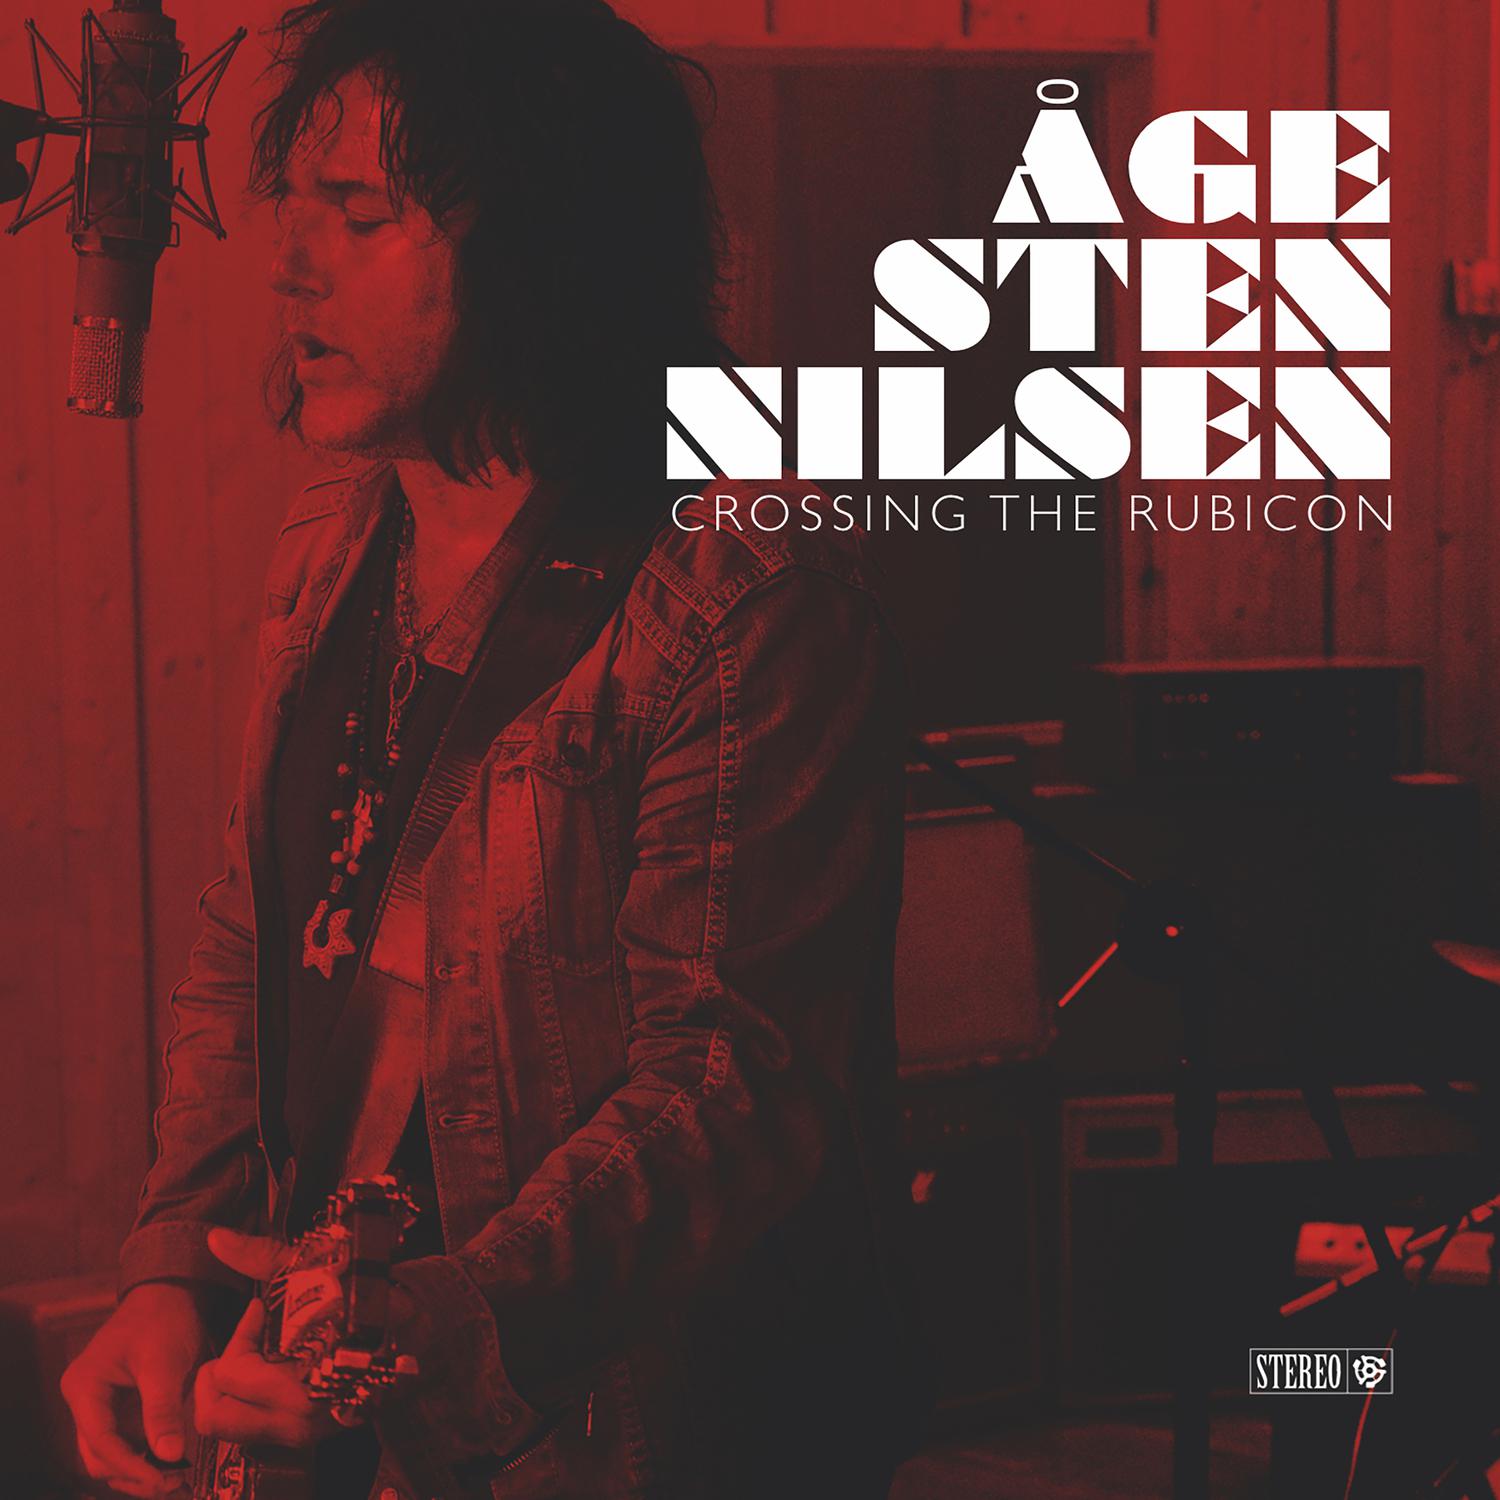 Age Sten Nilsen - Need Him Now